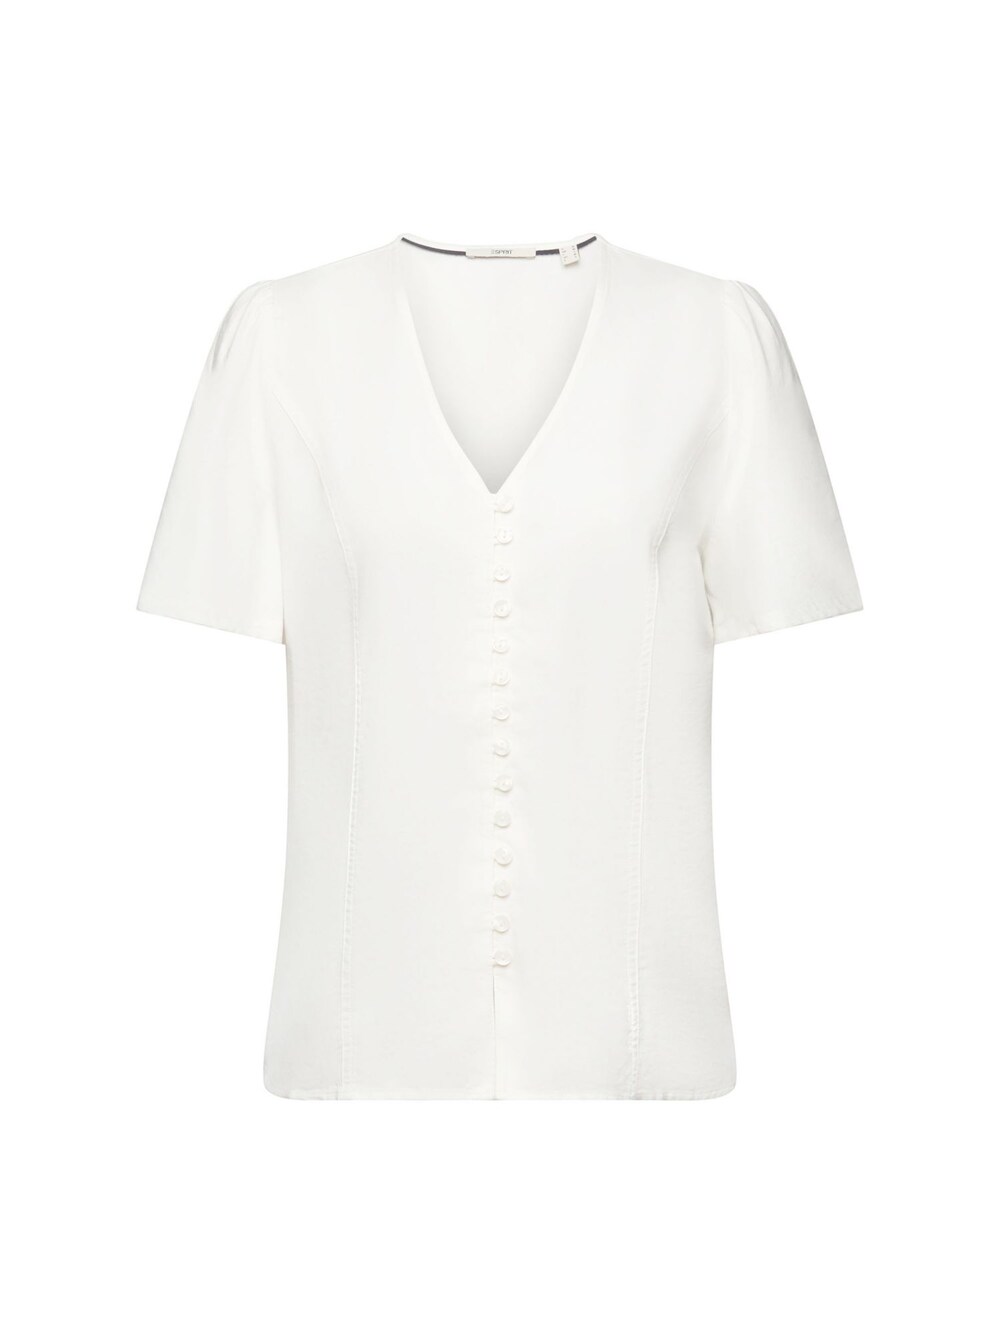 Блузка Esprit, от белого